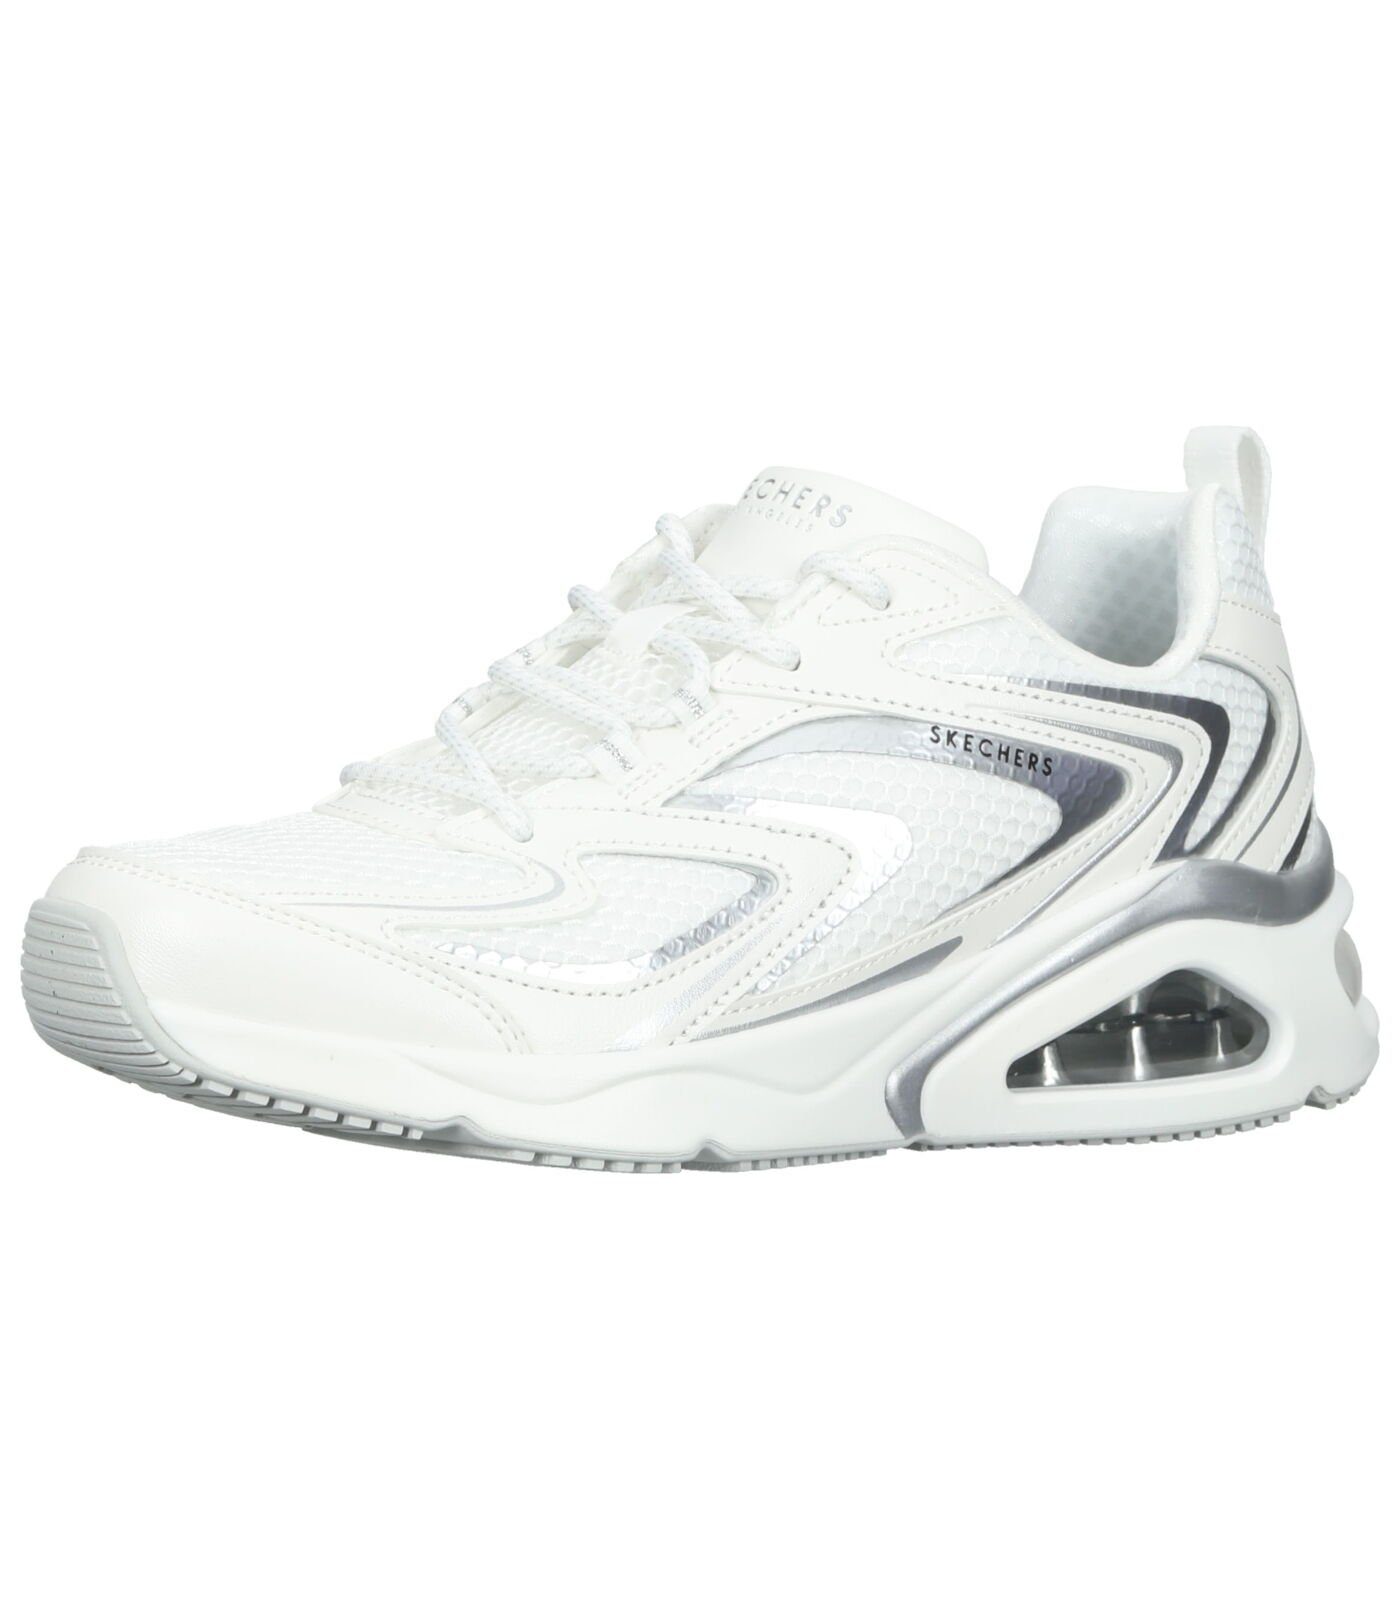 Skechers Sneaker Lederimitat/Textil Sneaker white silver (20203177)